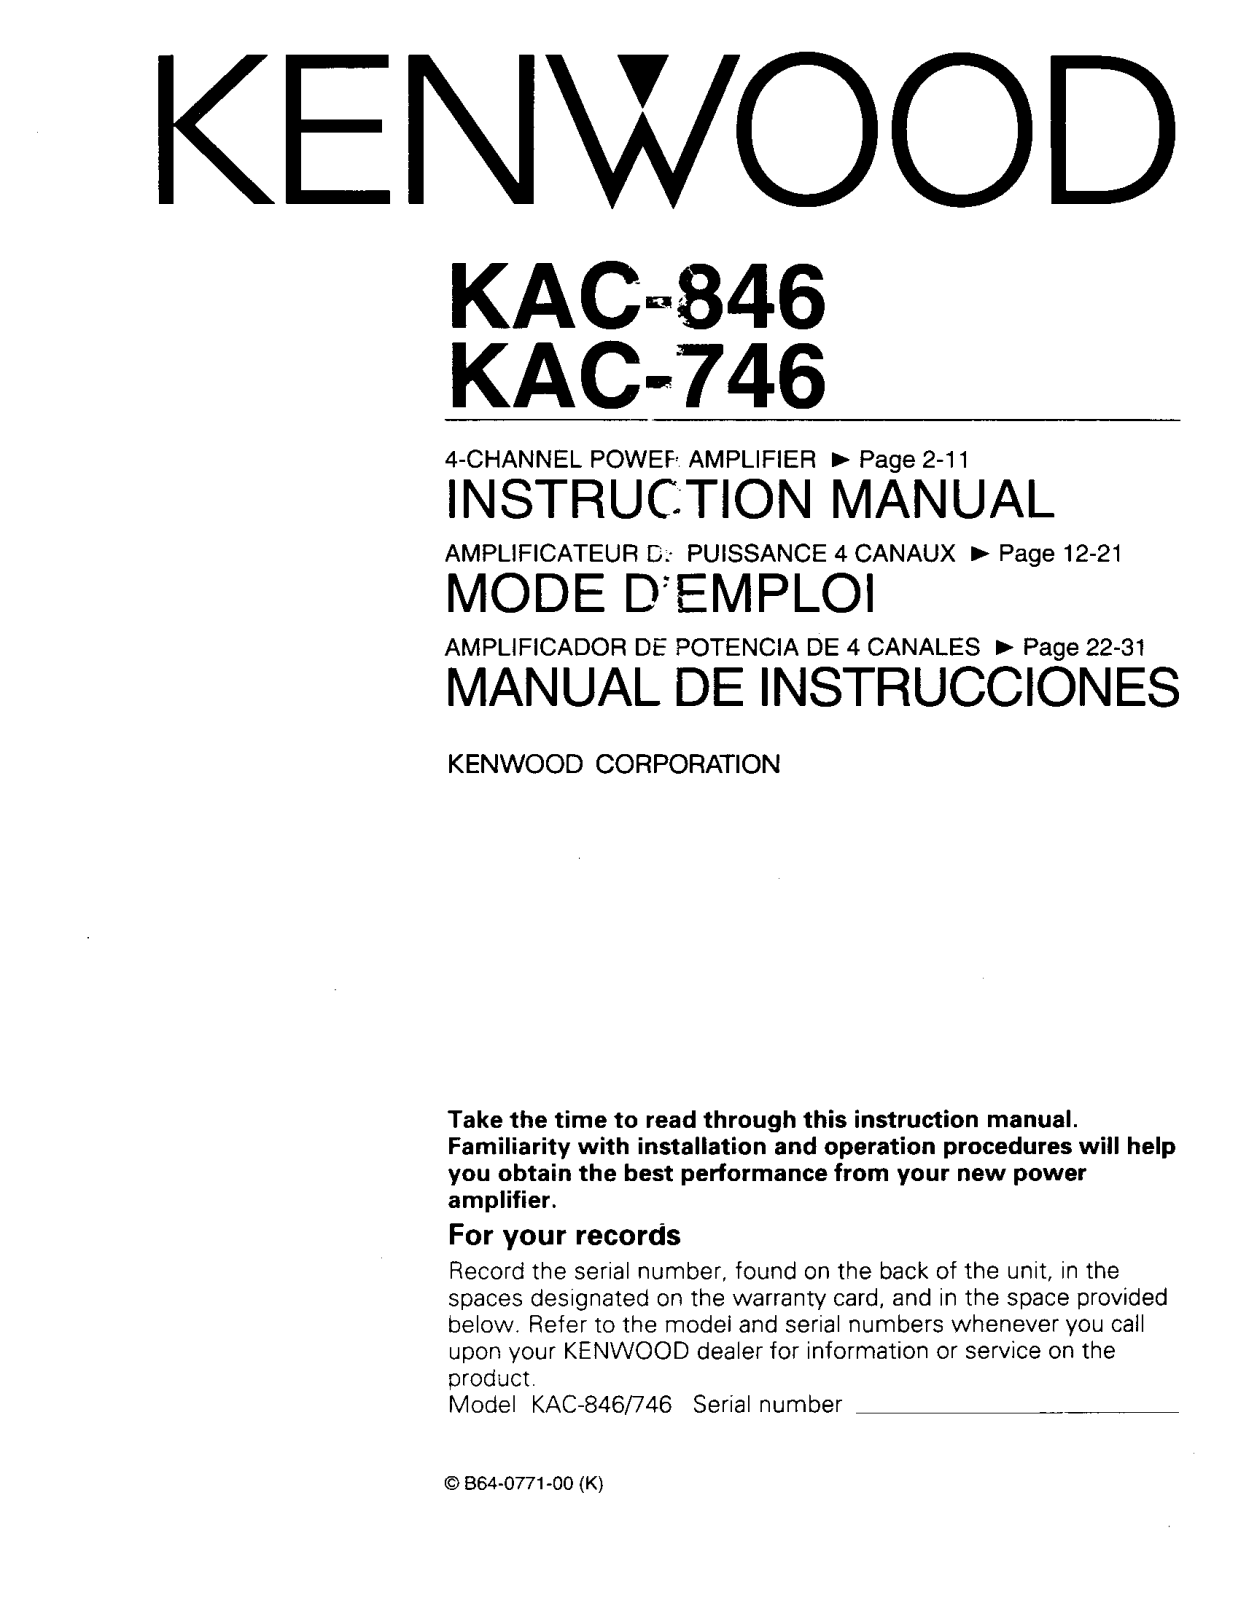 Kenwood KAC-846, KAC-746 Owner's Manual